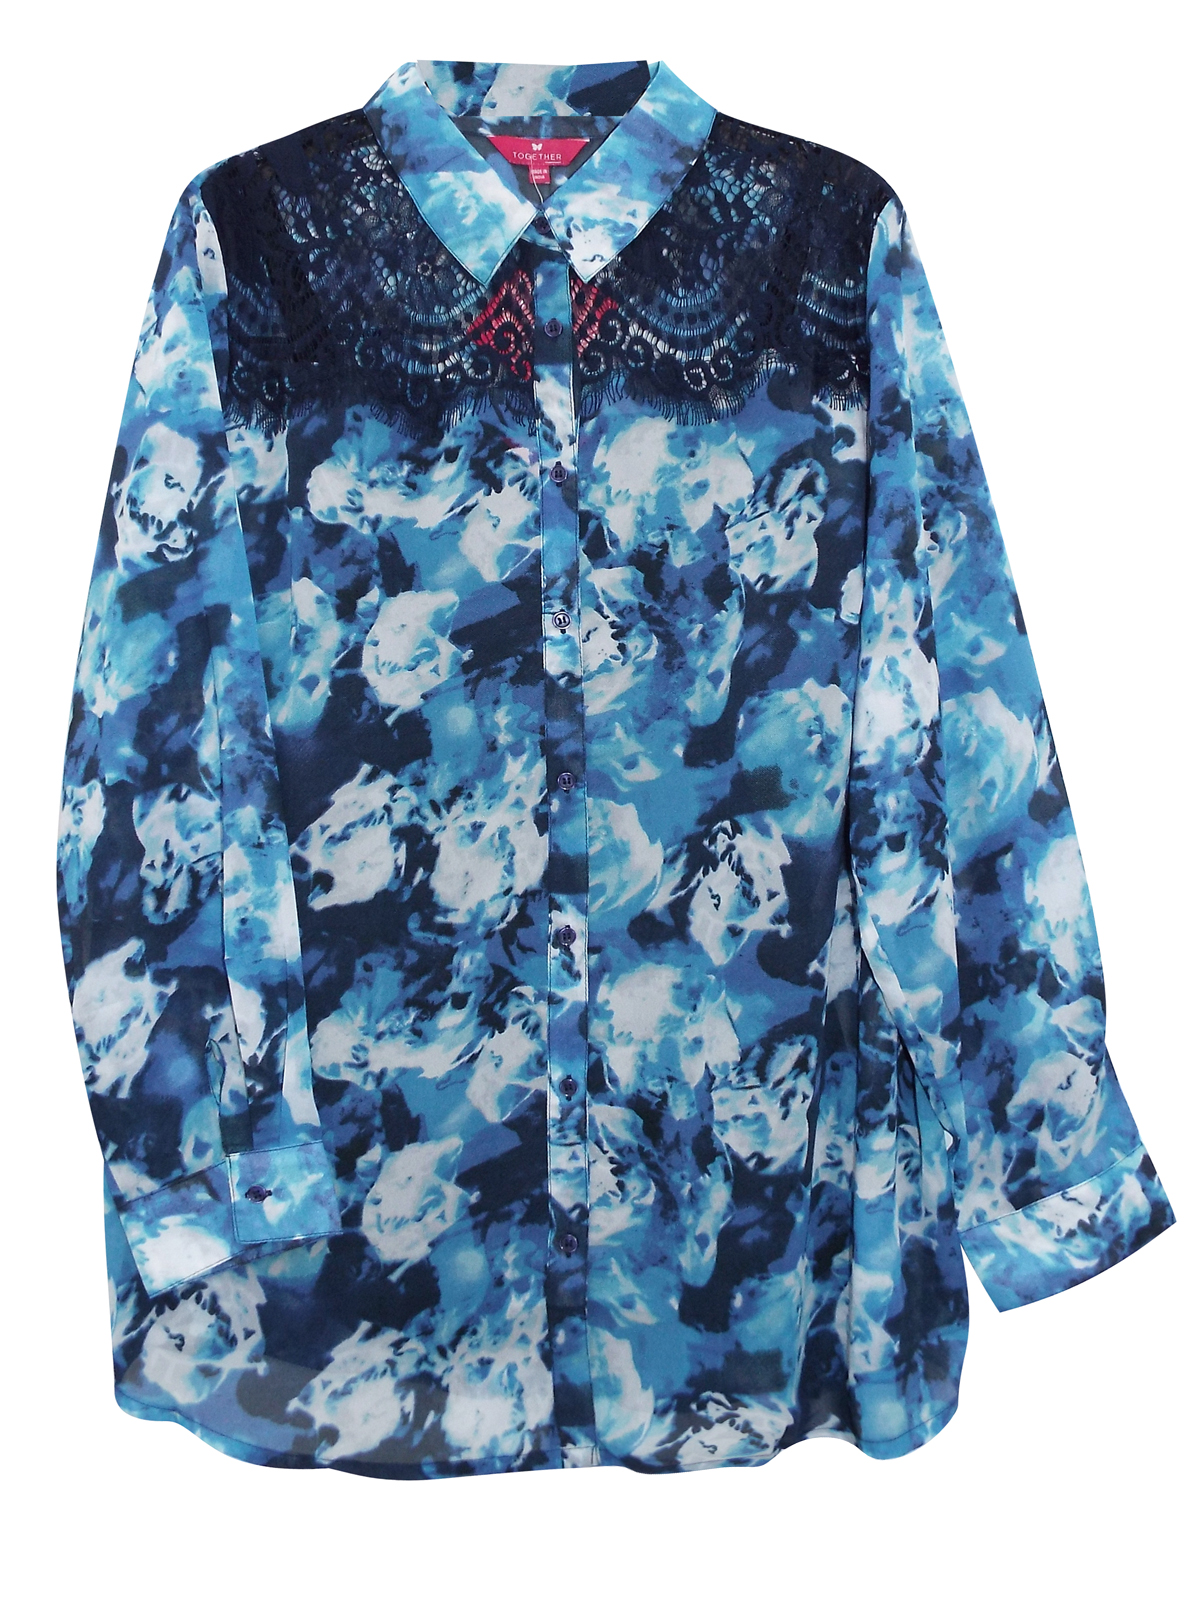 Together BLUE Lace Shoulder Sheer Floral Blouse - Plus Size 16